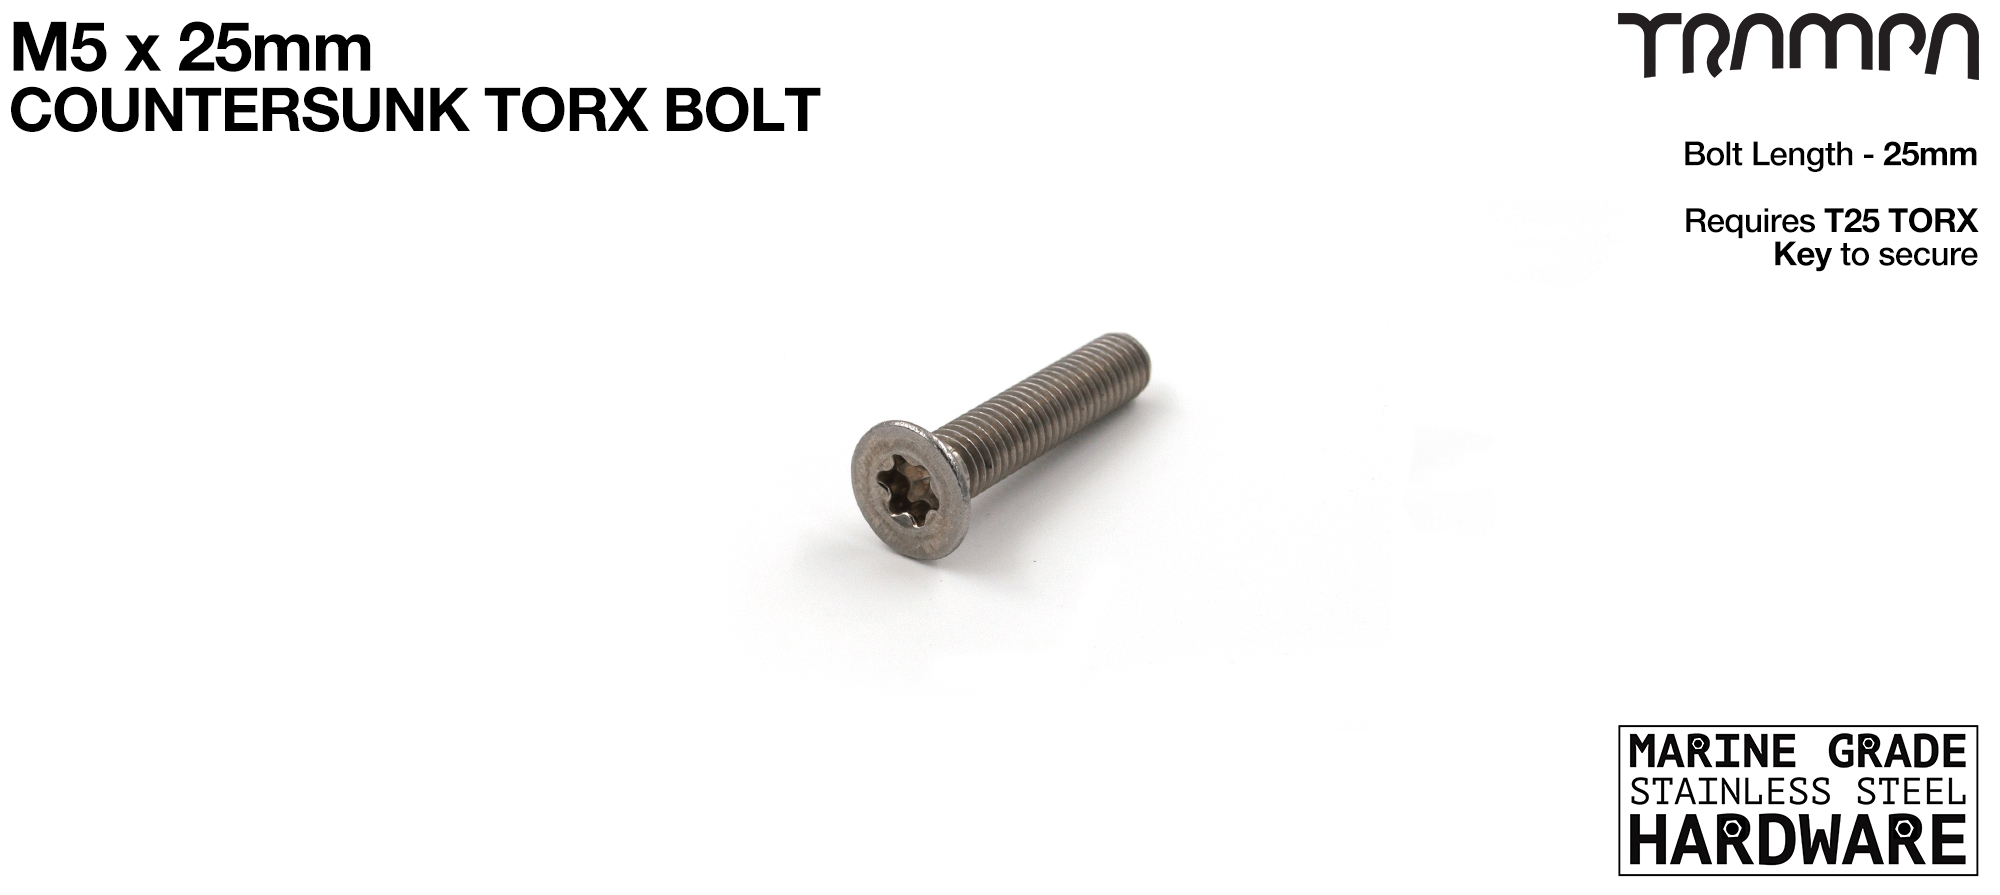 M5 x 25mm TORX Countersunk Bolt 